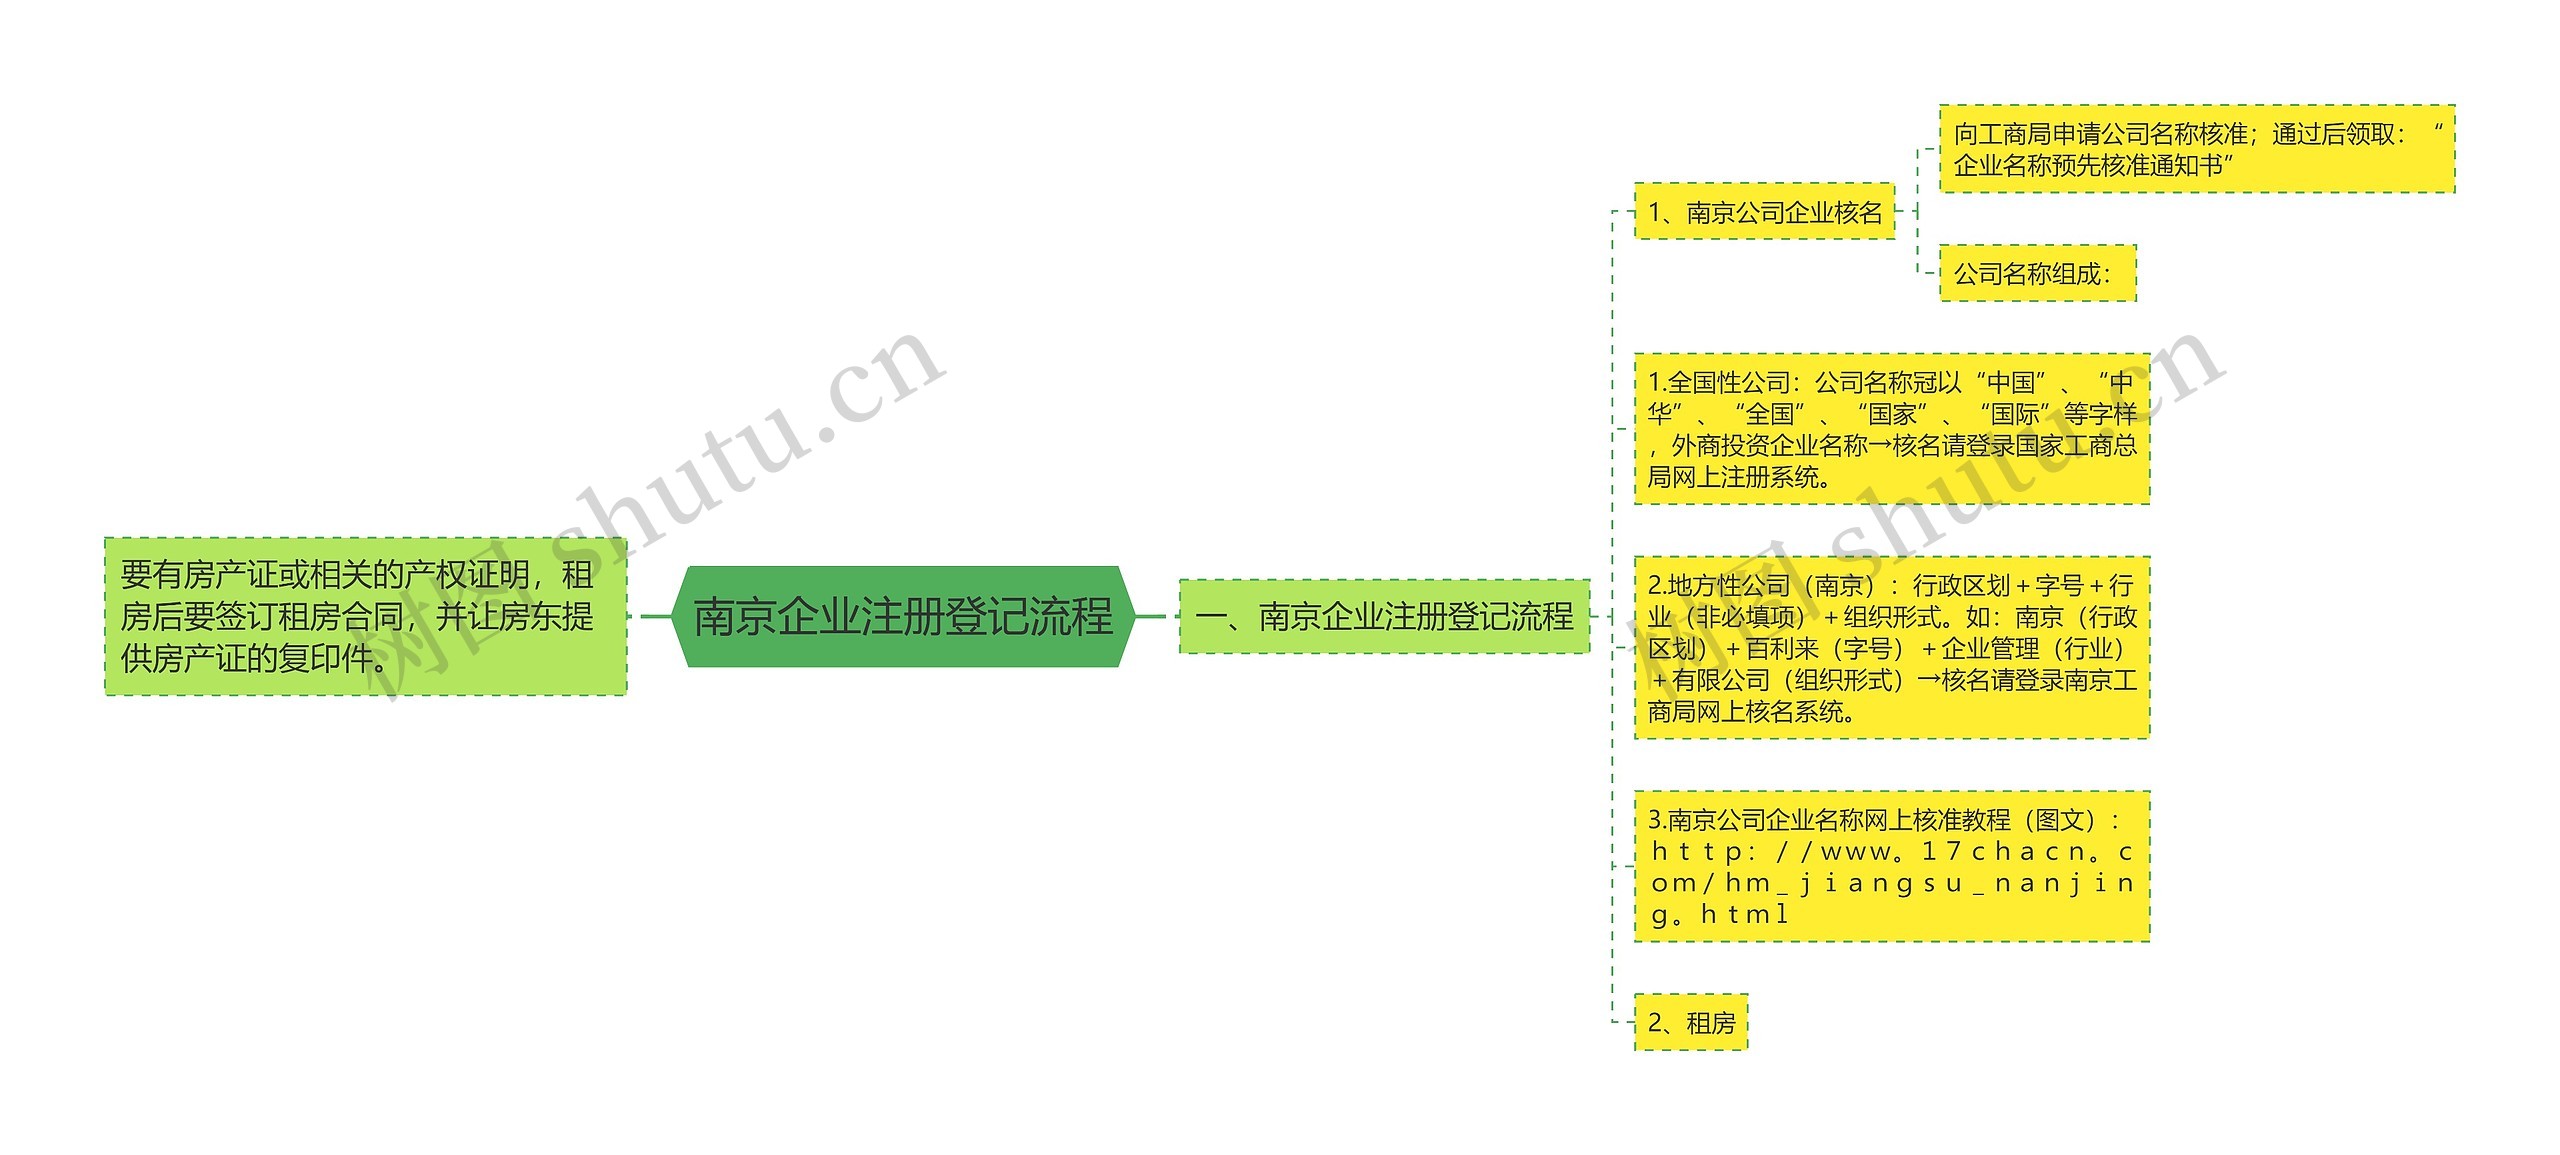 南京企业注册登记流程